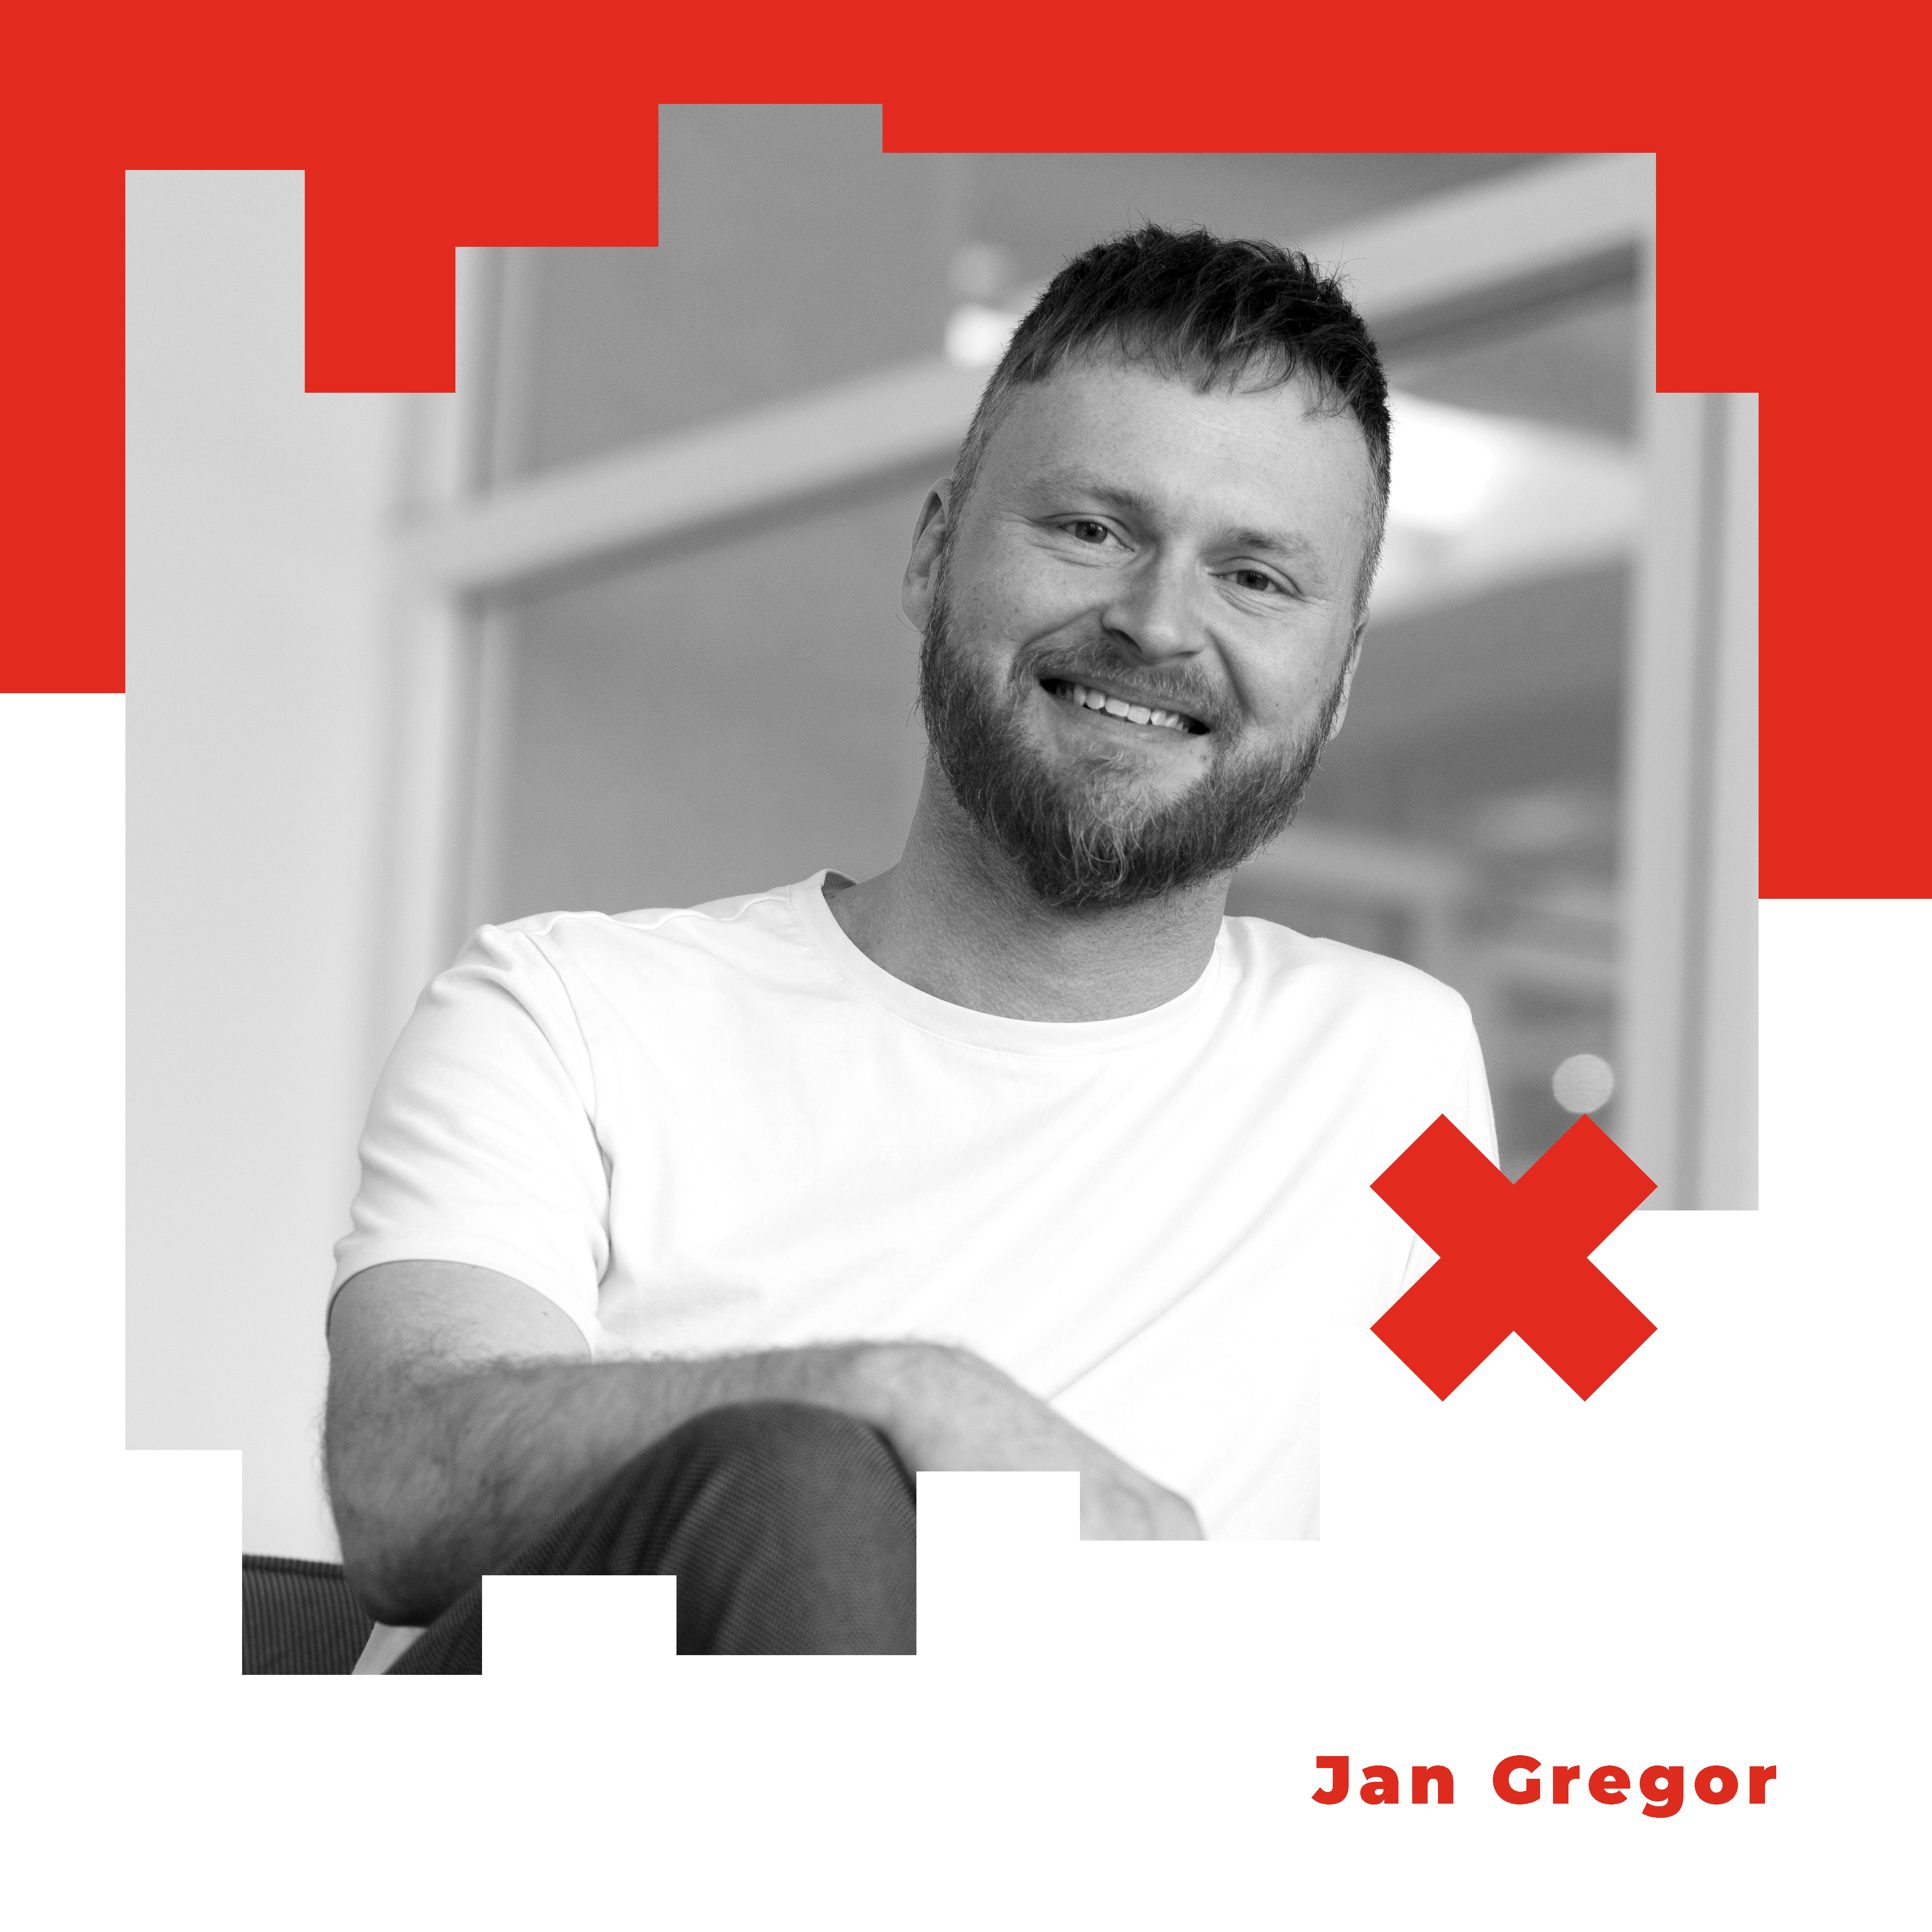 Jan Gregor